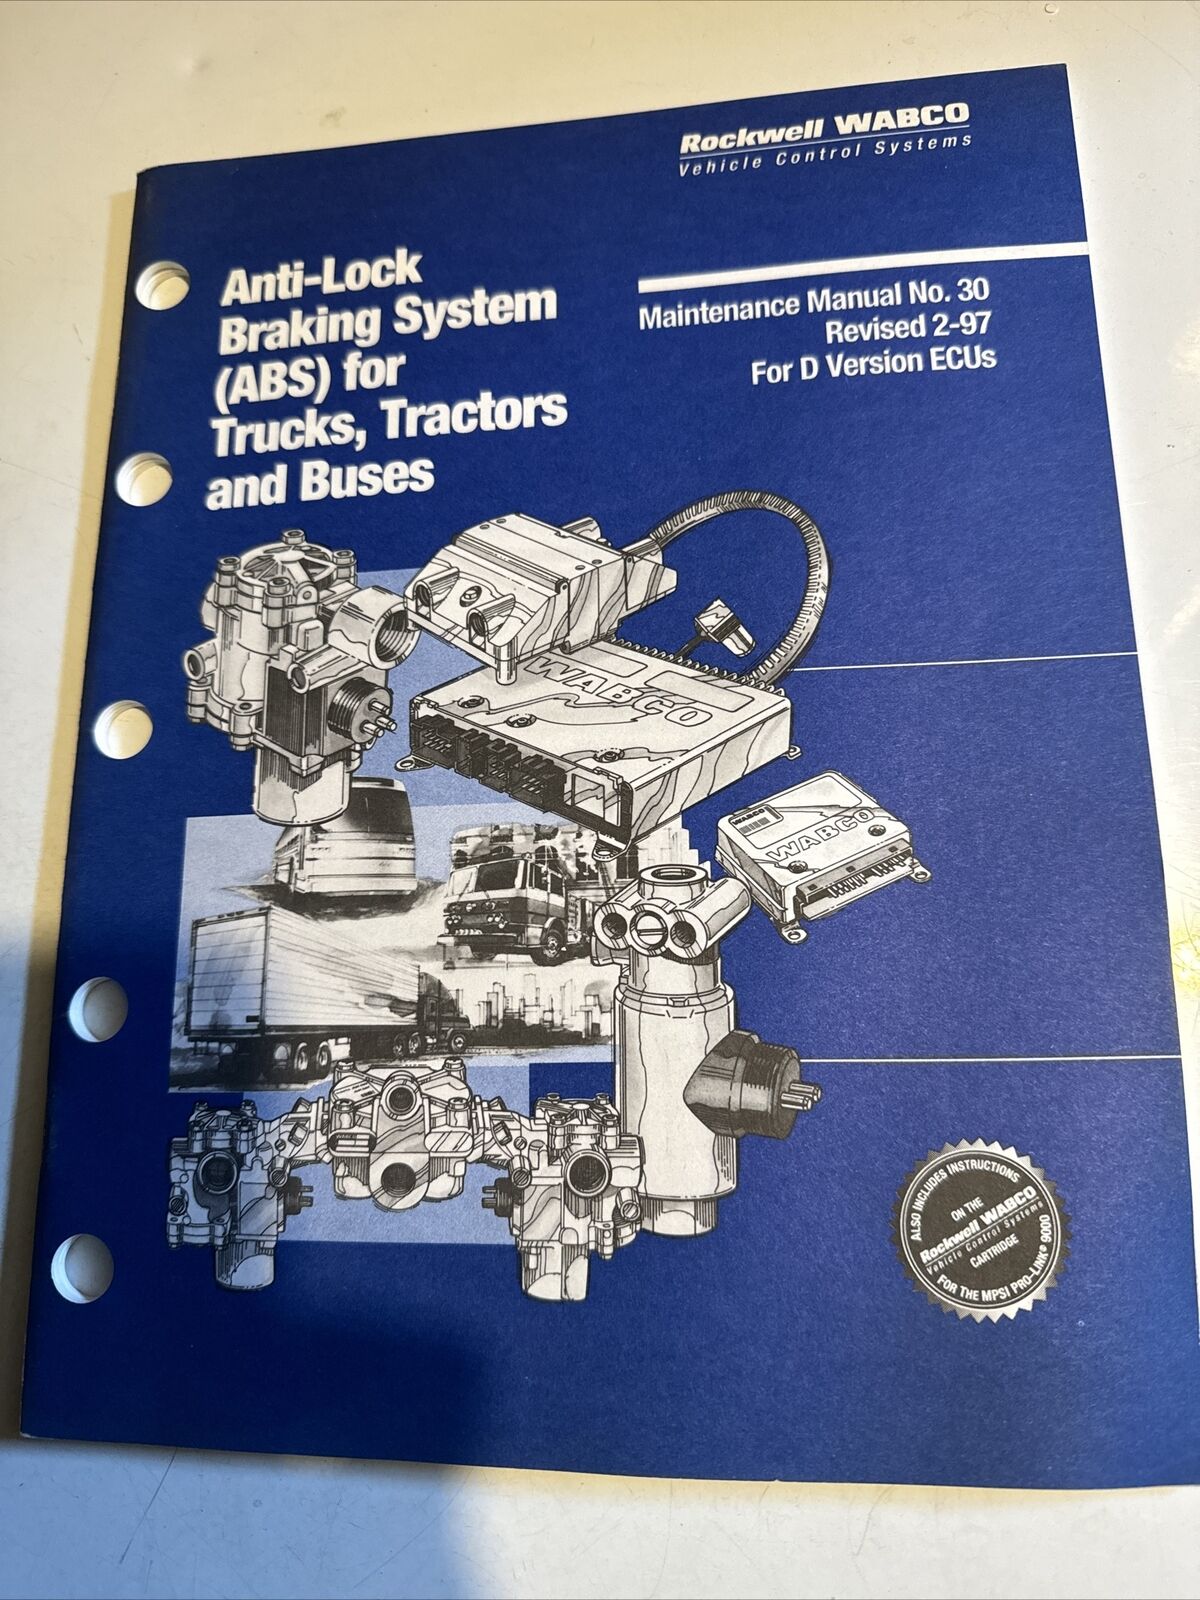 Rockwell WABCO Anti-Lock Braking System (ABS) Maintenance Manual No. 30